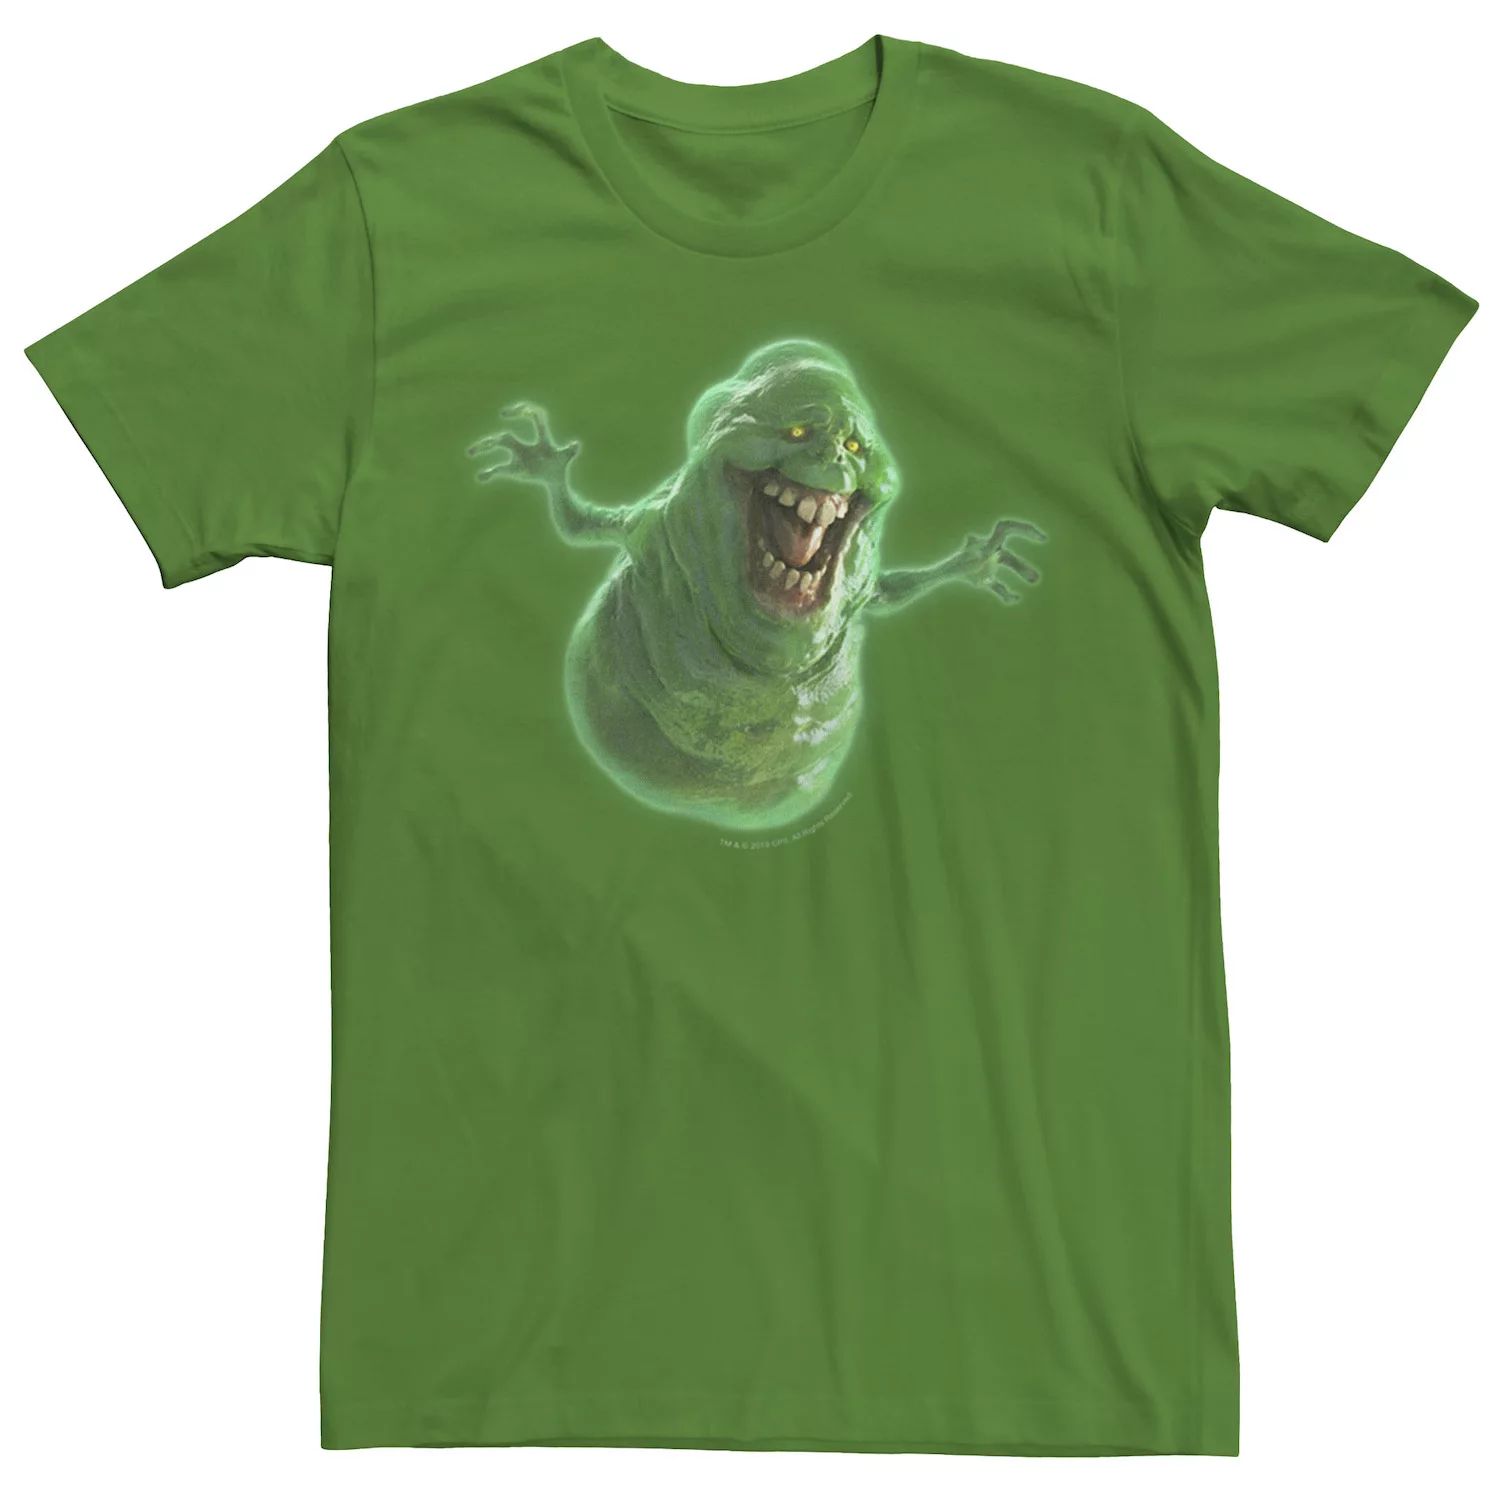 Мужская футболка с портретом «Охотники за привидениями» Licensed Character